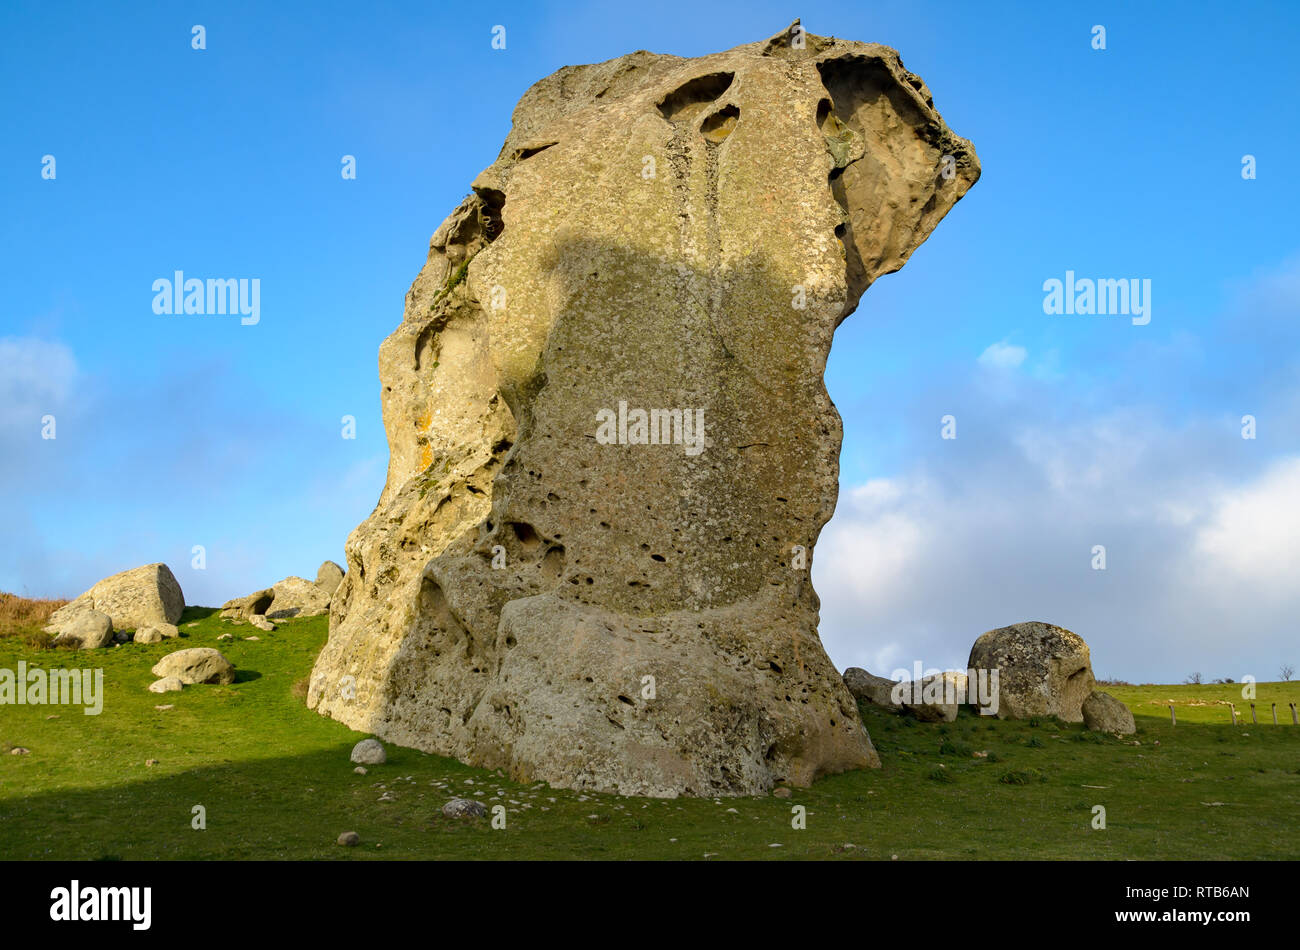 Rock formations of Argimusco near Montalbano Elicona, Sicily Italy Stock Photo